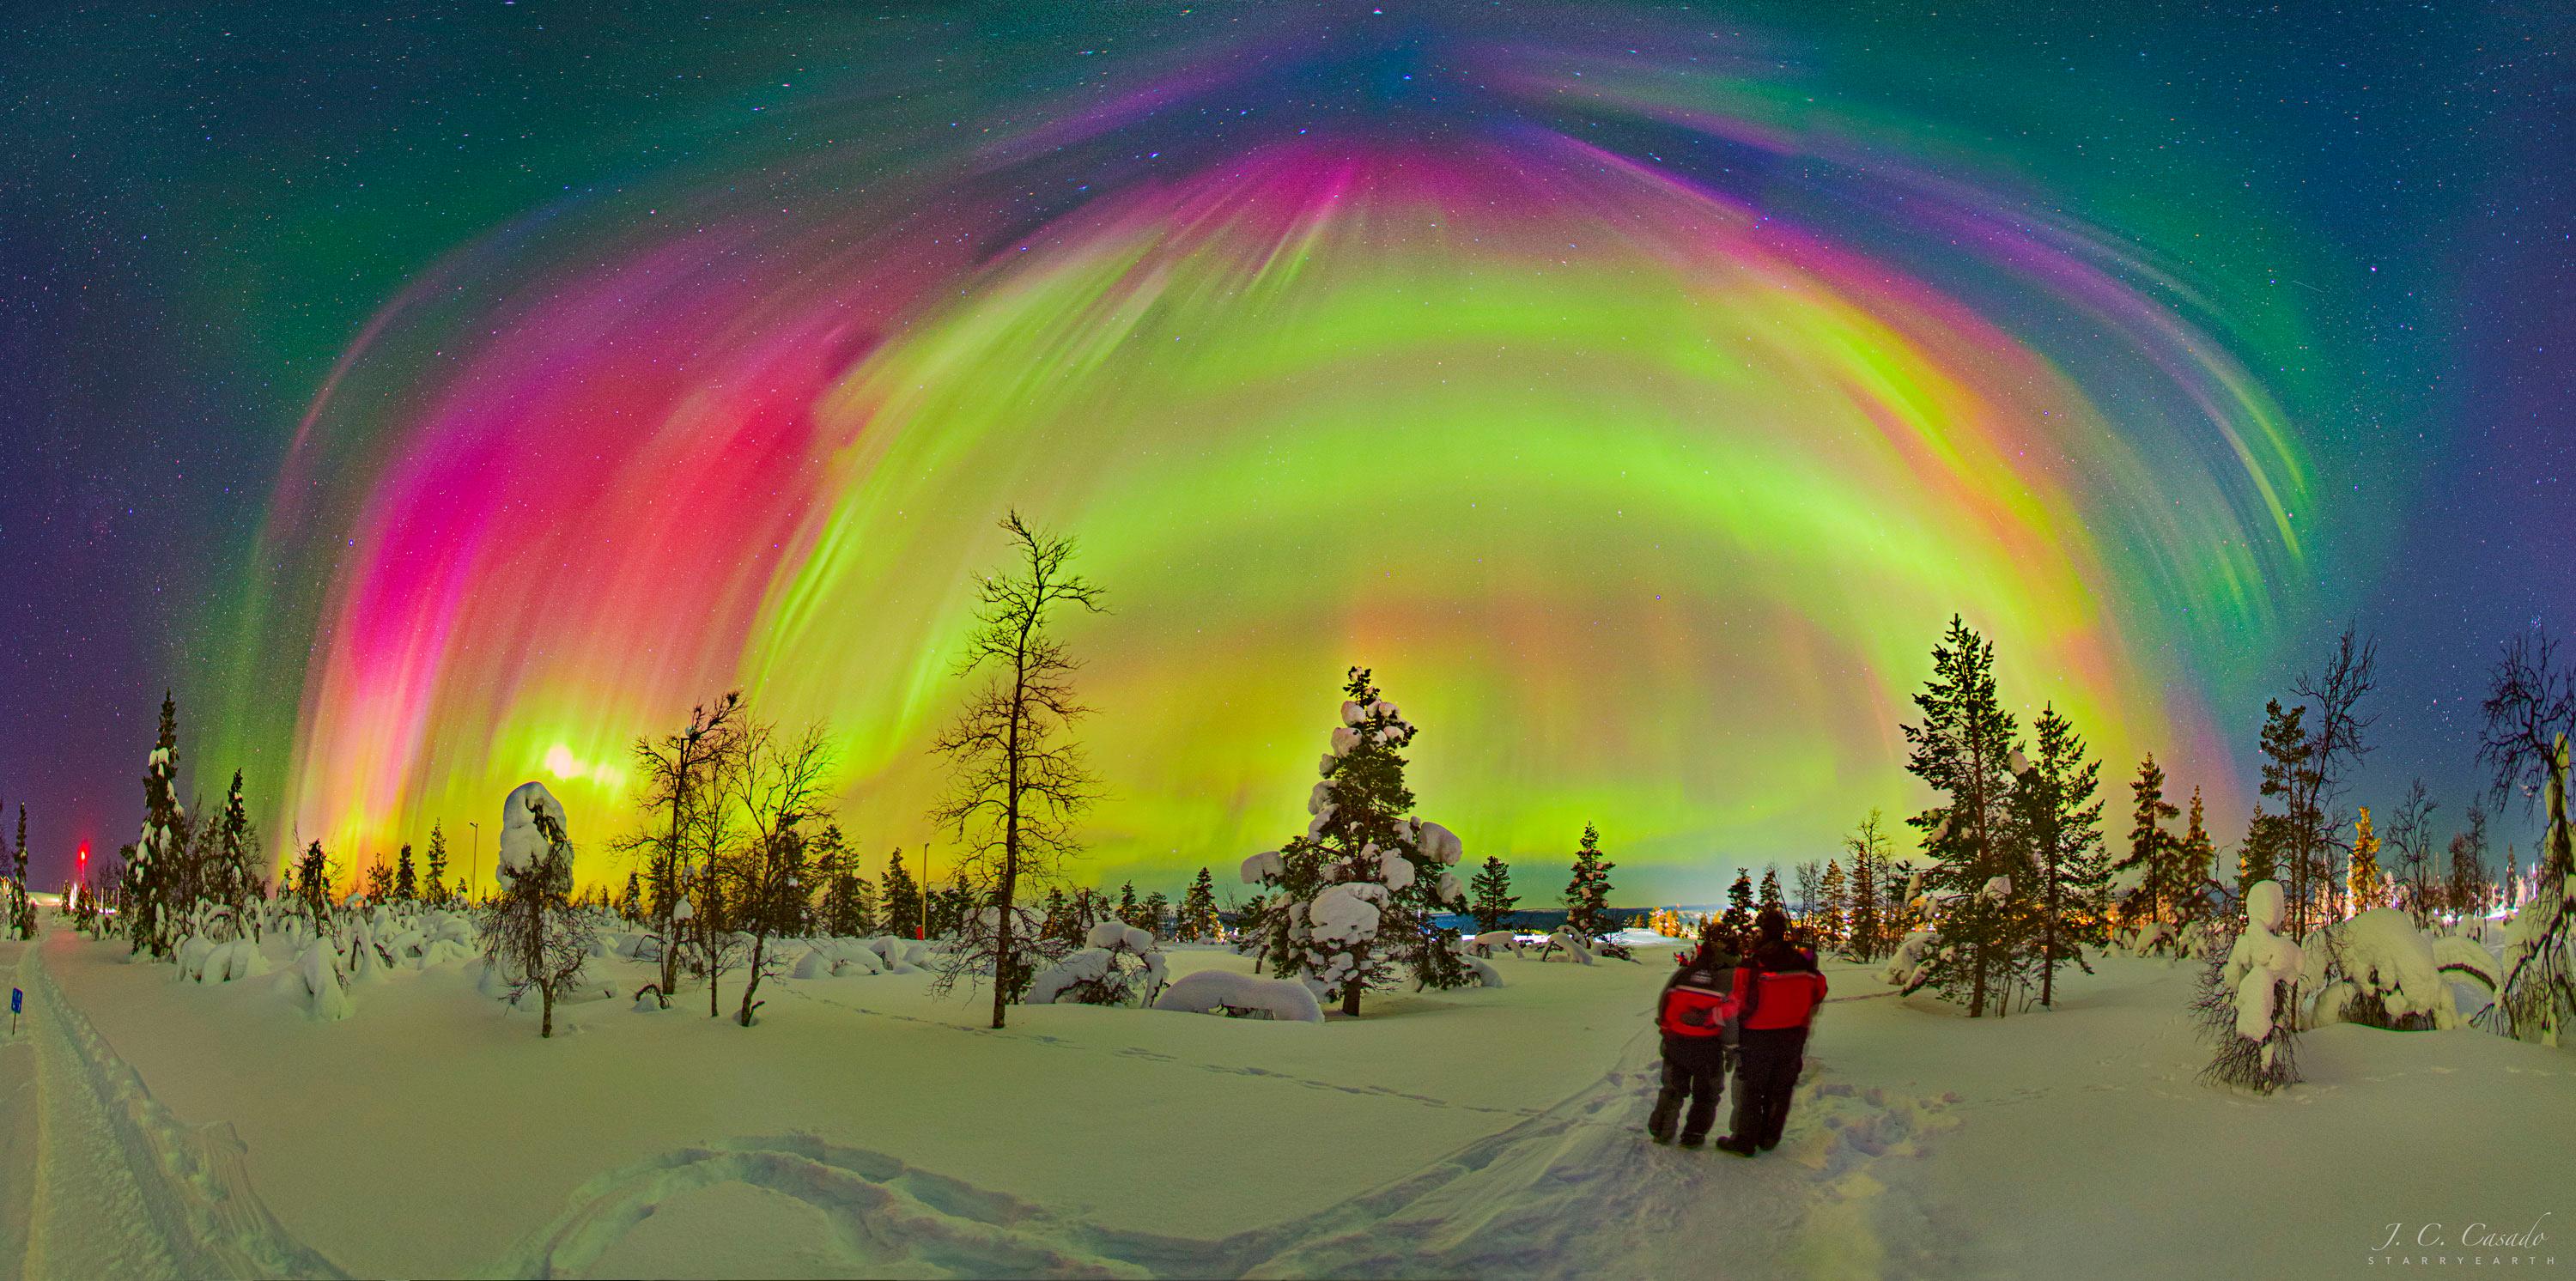 يقف شخصان يرتديان معاطف حمراء على مشهدٍ طبيعي ثلجي به أشجار عارية. في الأعلى، تظهر العديد من الأشفاق القطبيّة بألوان مختلفة ، مع بعض النجوم المرئيّة في الخلفية.